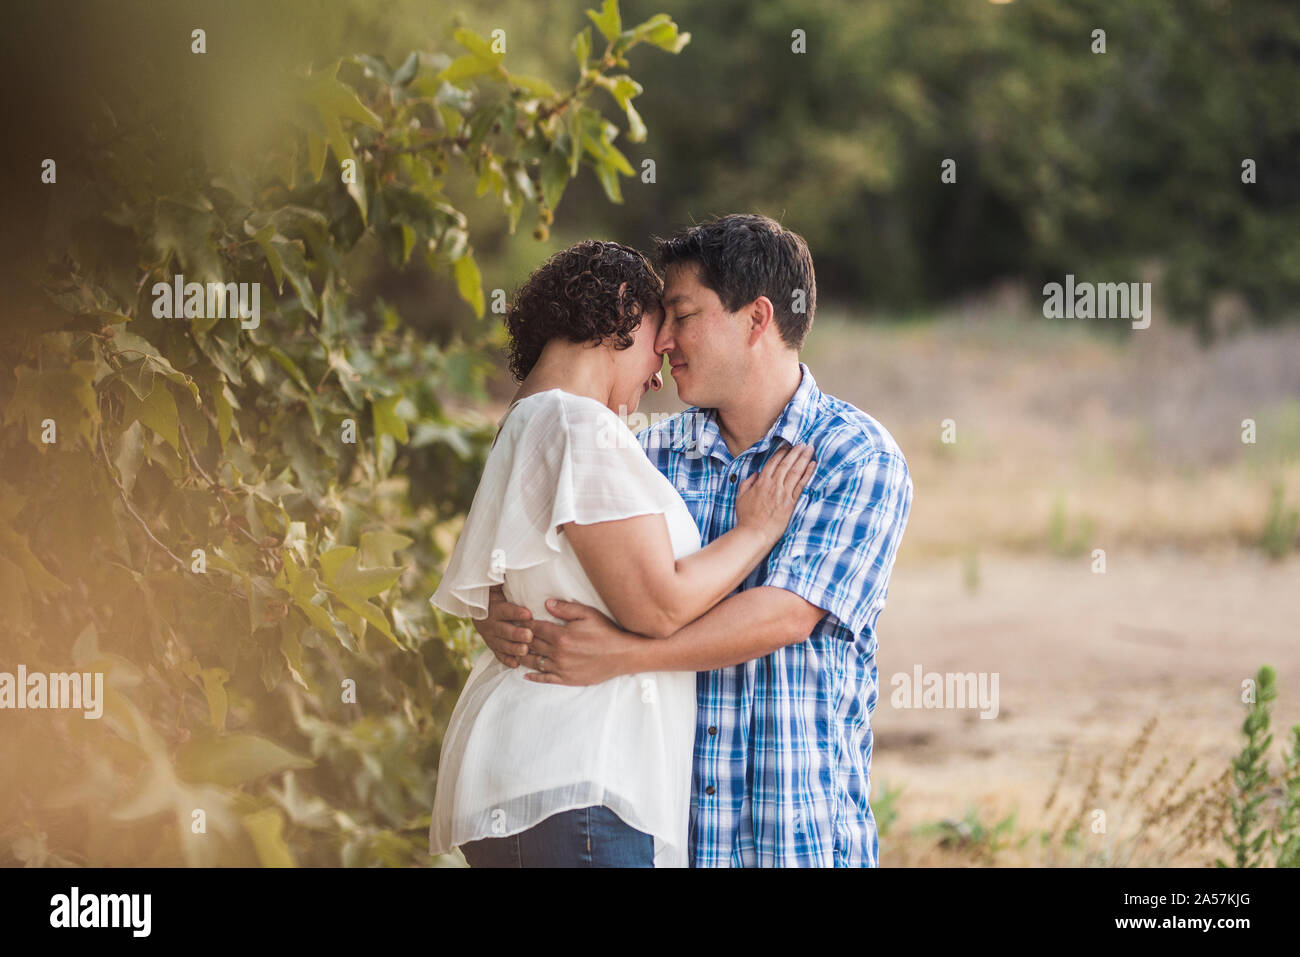 Mann und Frau umarmen im Freien in der Nähe von Tree-B/W-Foto Stockfoto